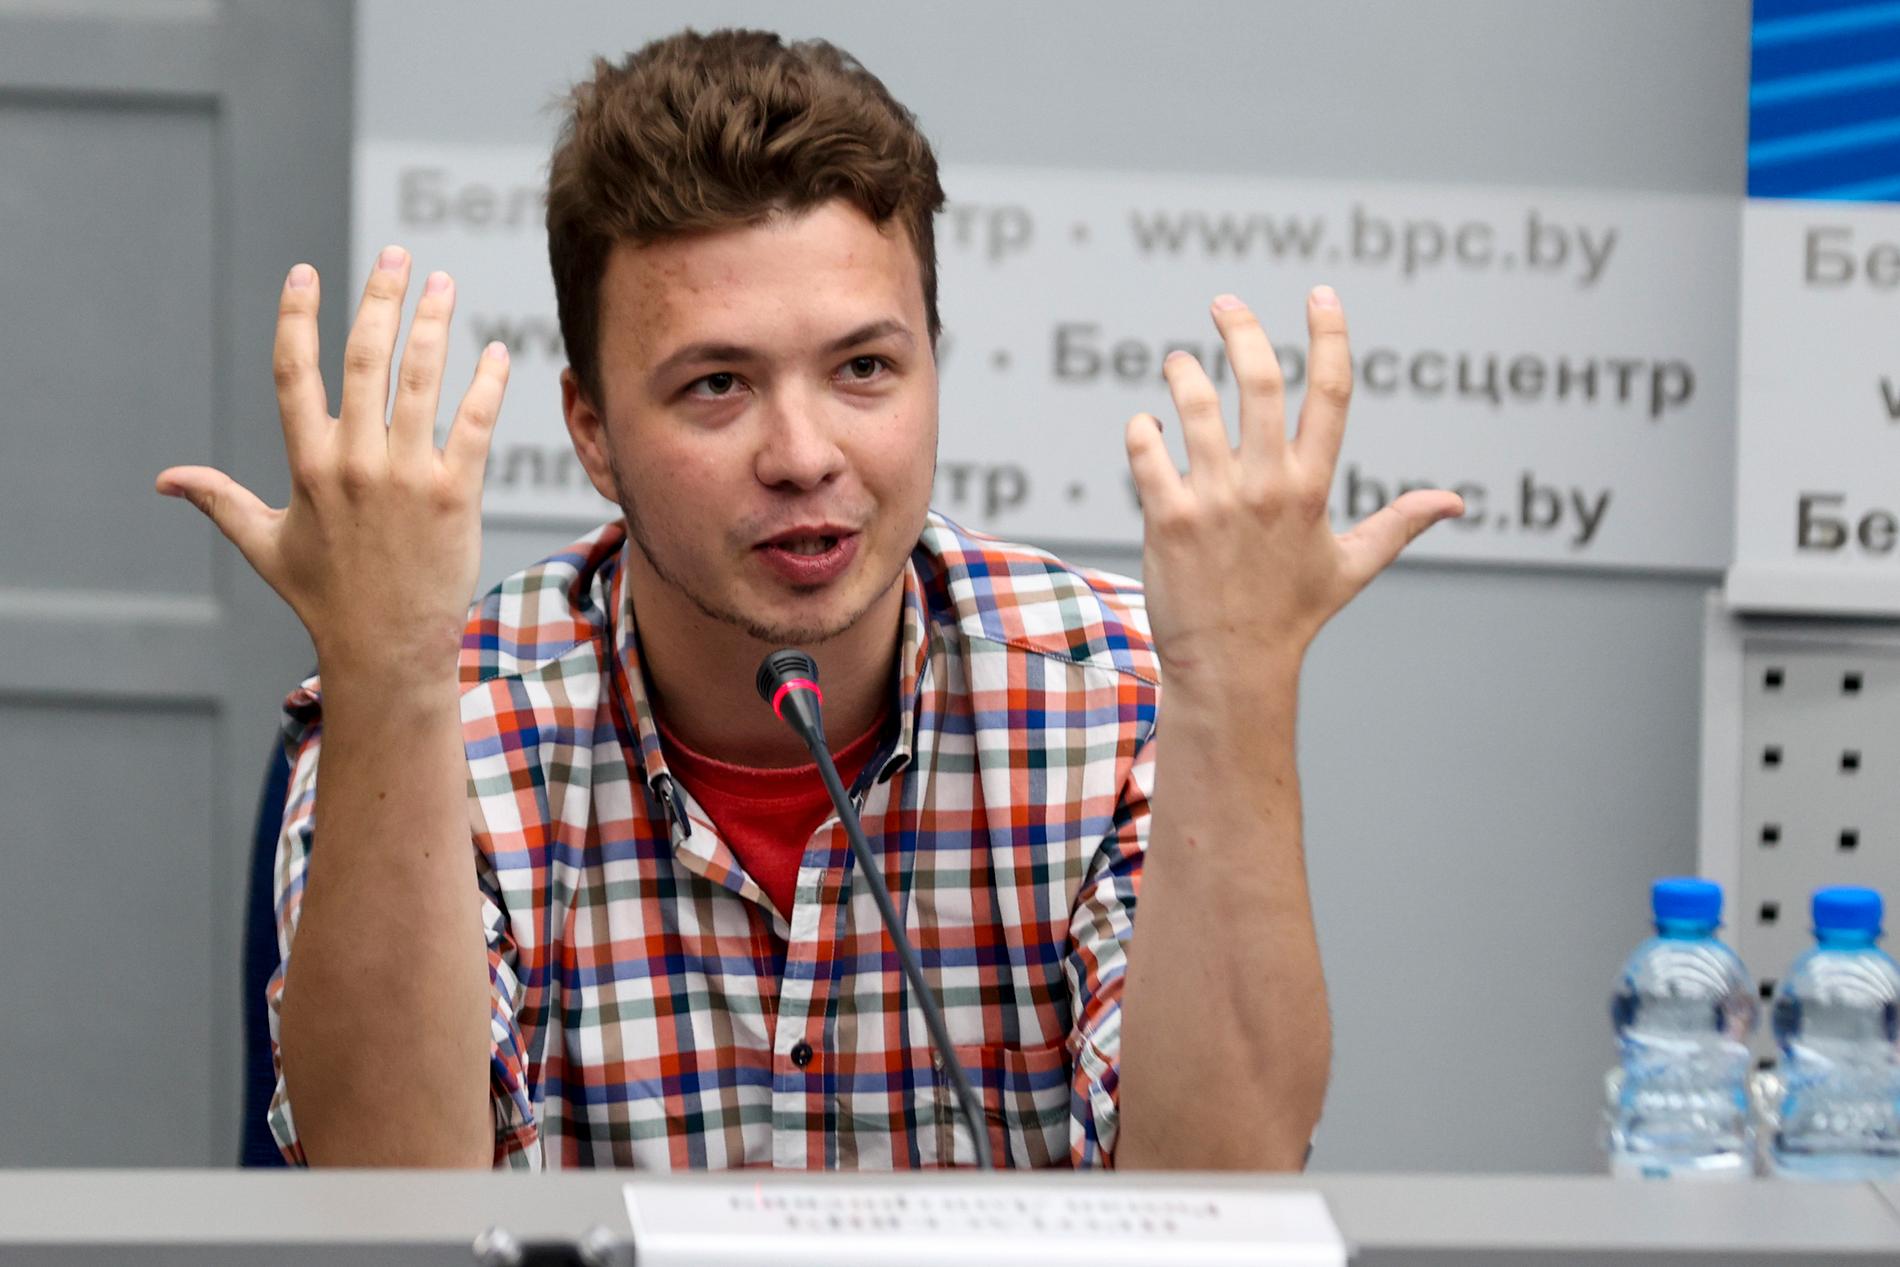 Den fängslade belarusiske journalisten Roman Protasevitj har åter visats upp på "presskonferens" i huvudstaden Minsk.